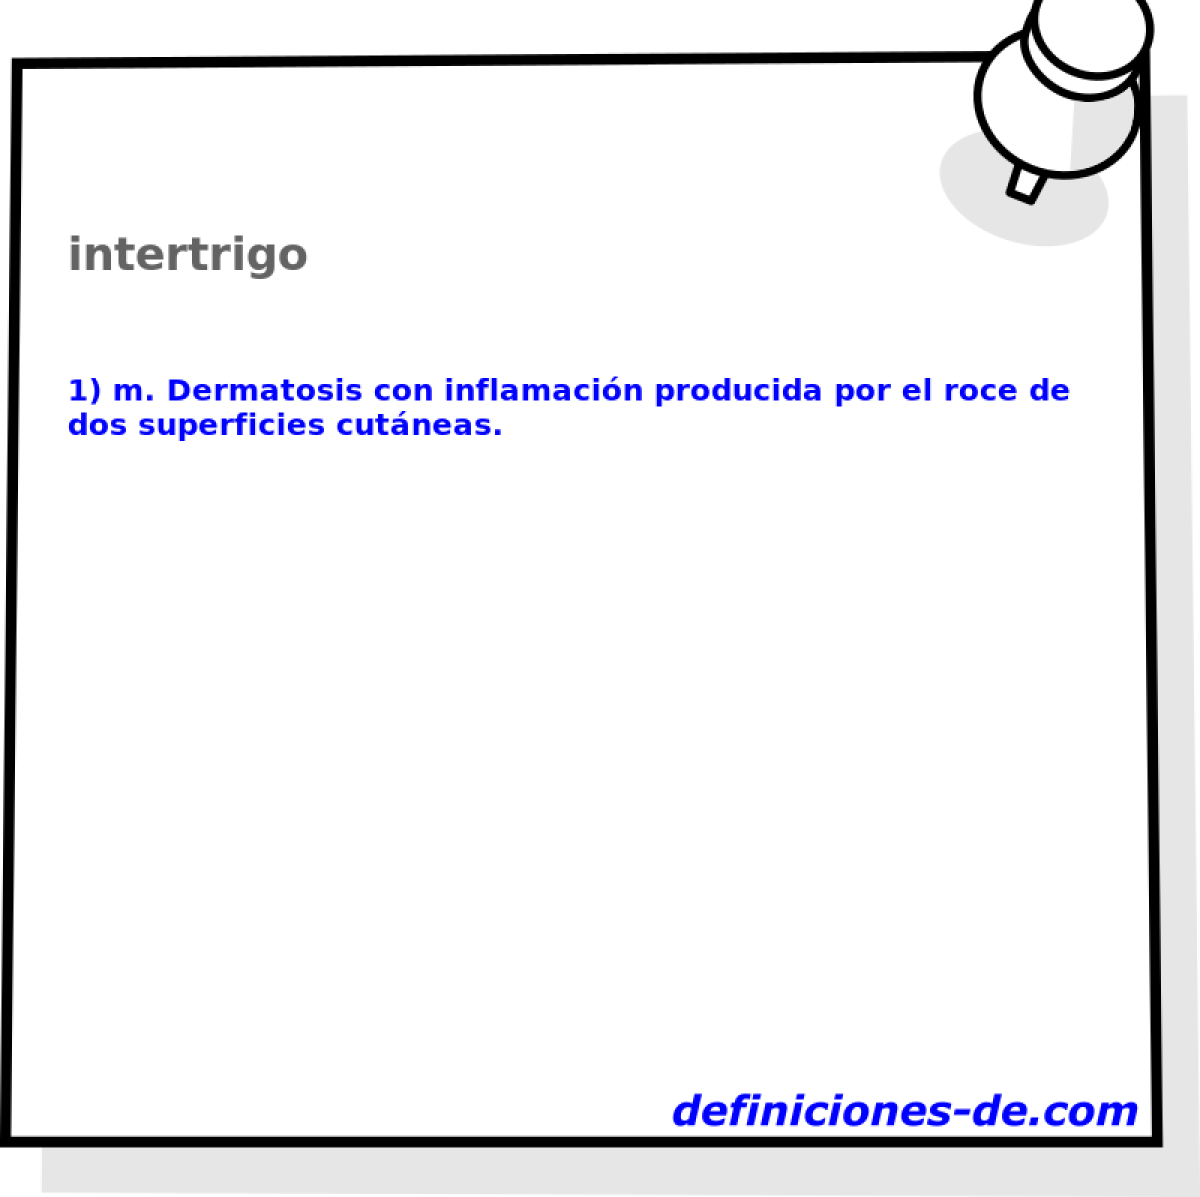 intertrigo 